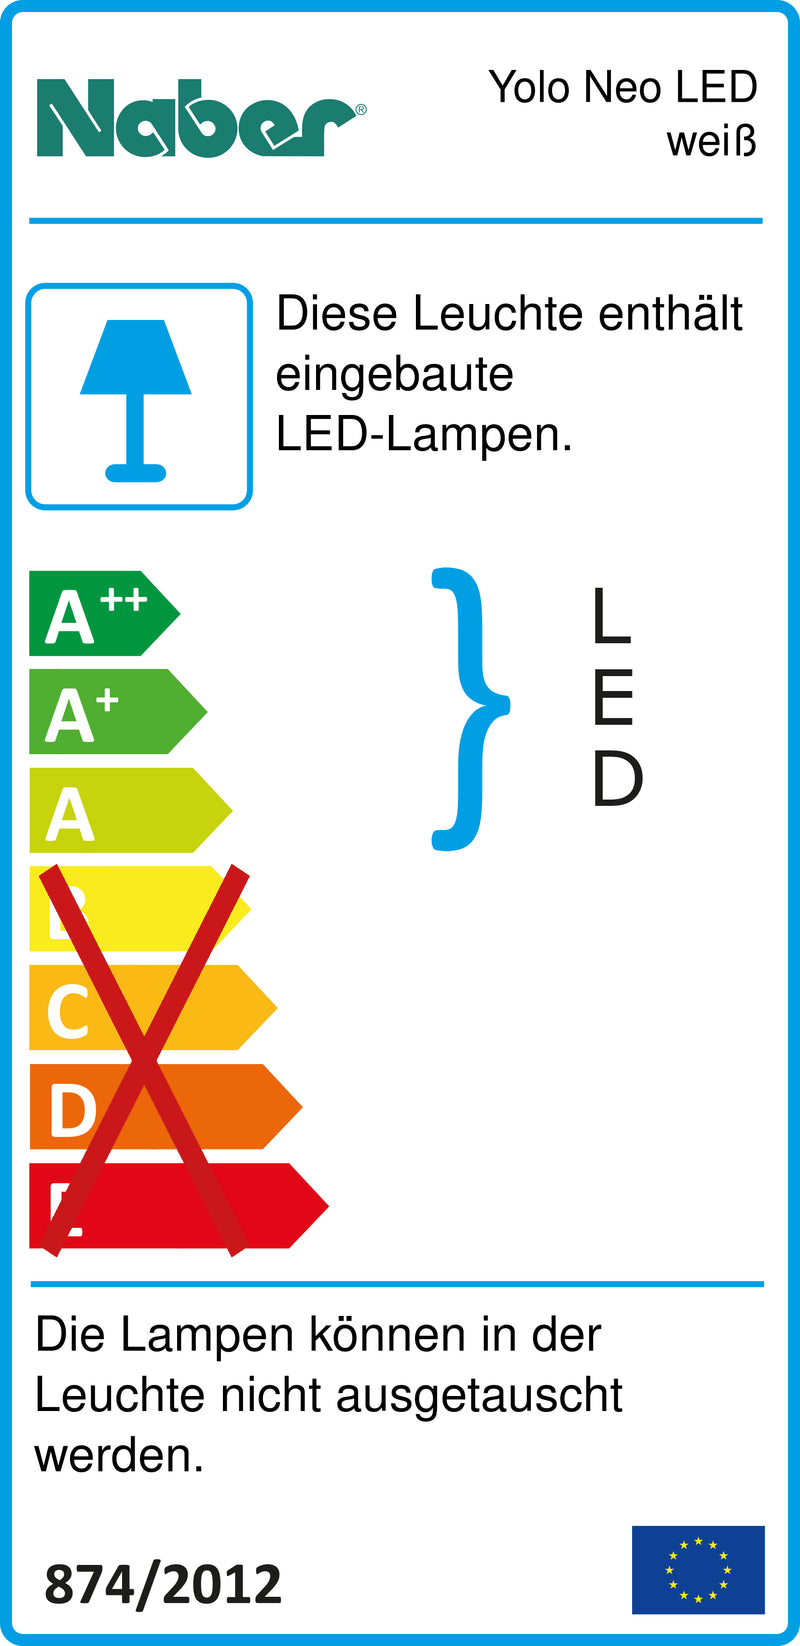 E-Label zu Zeichnung zu Yolo Neo LED weiß als Variante Einzelleuchte o. S., 4000 K neutralweiß von Naber GmbH in der Kategorie Lichttechnik in Österreich auf conceptshop.at